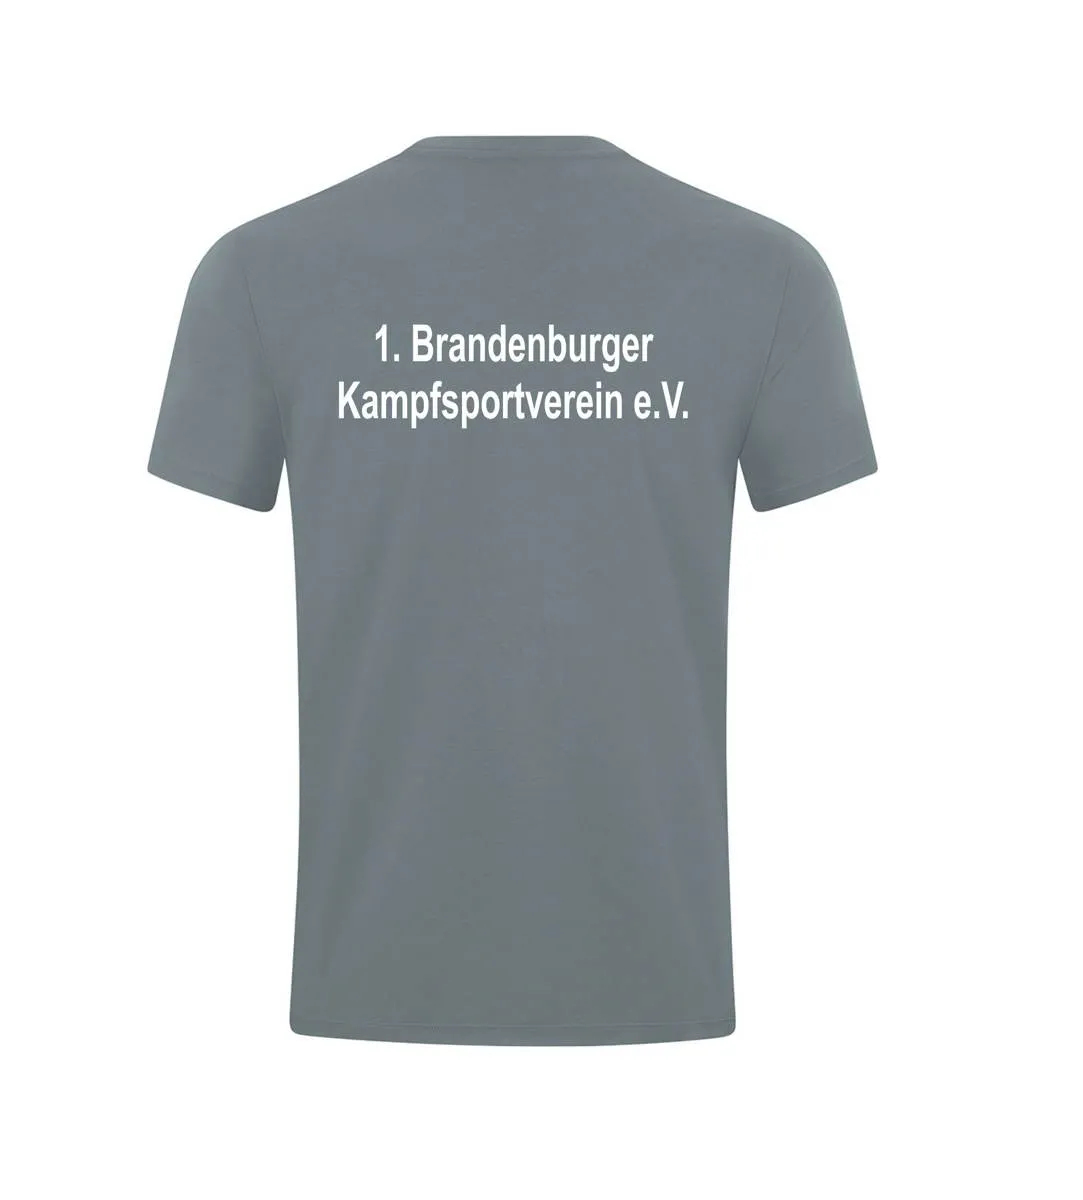 JAKO T-Shirt Power Brandenburger Kampfsportverein grau